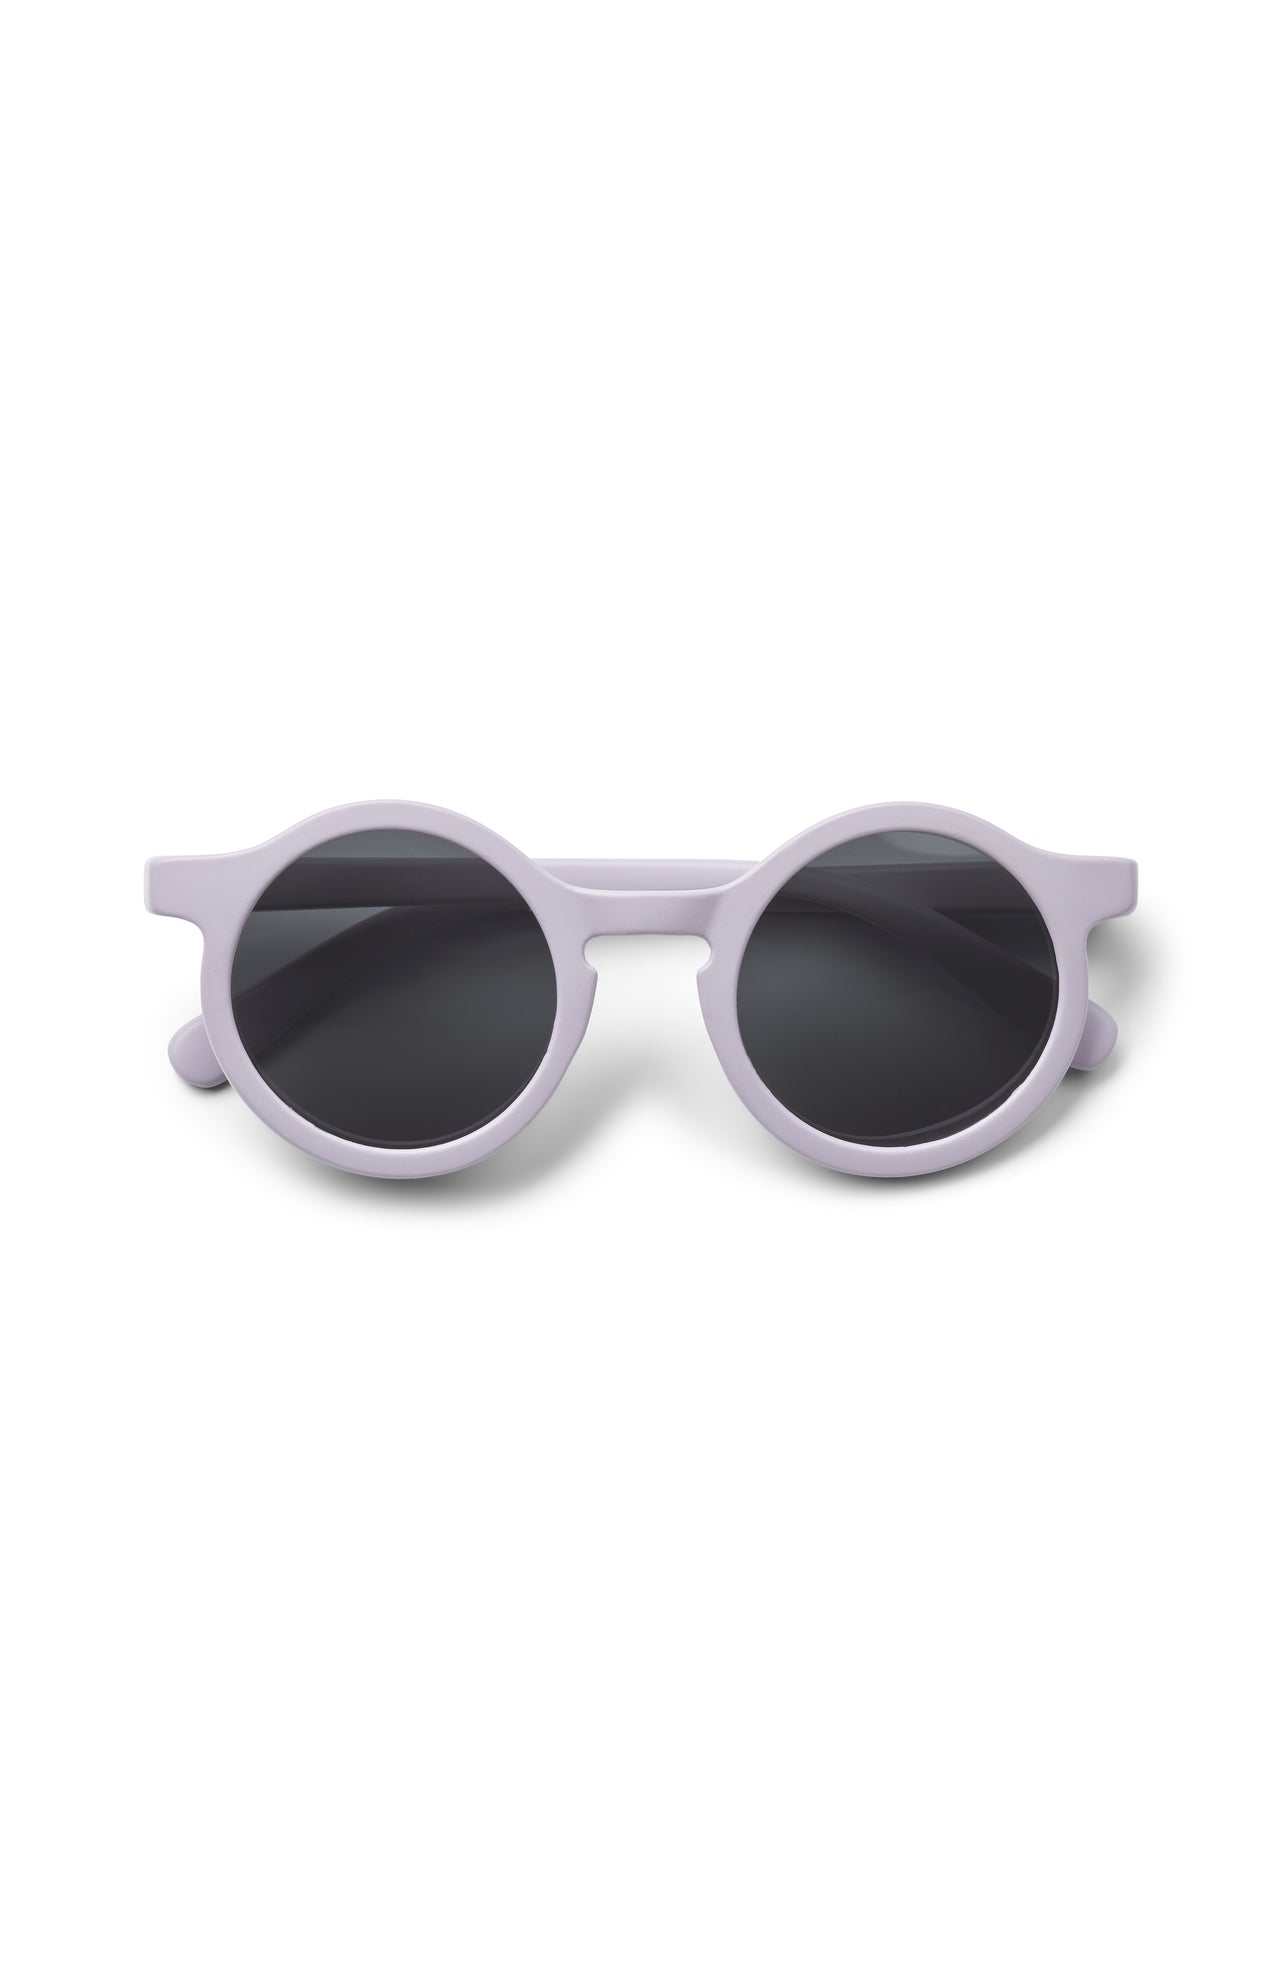 Liewood Sonnenbrille, Kleinkinder 1 bis 3 Jahre, verschiedene Farben, UV-Schutz, kindgerechtes Design, für sonnige Tage